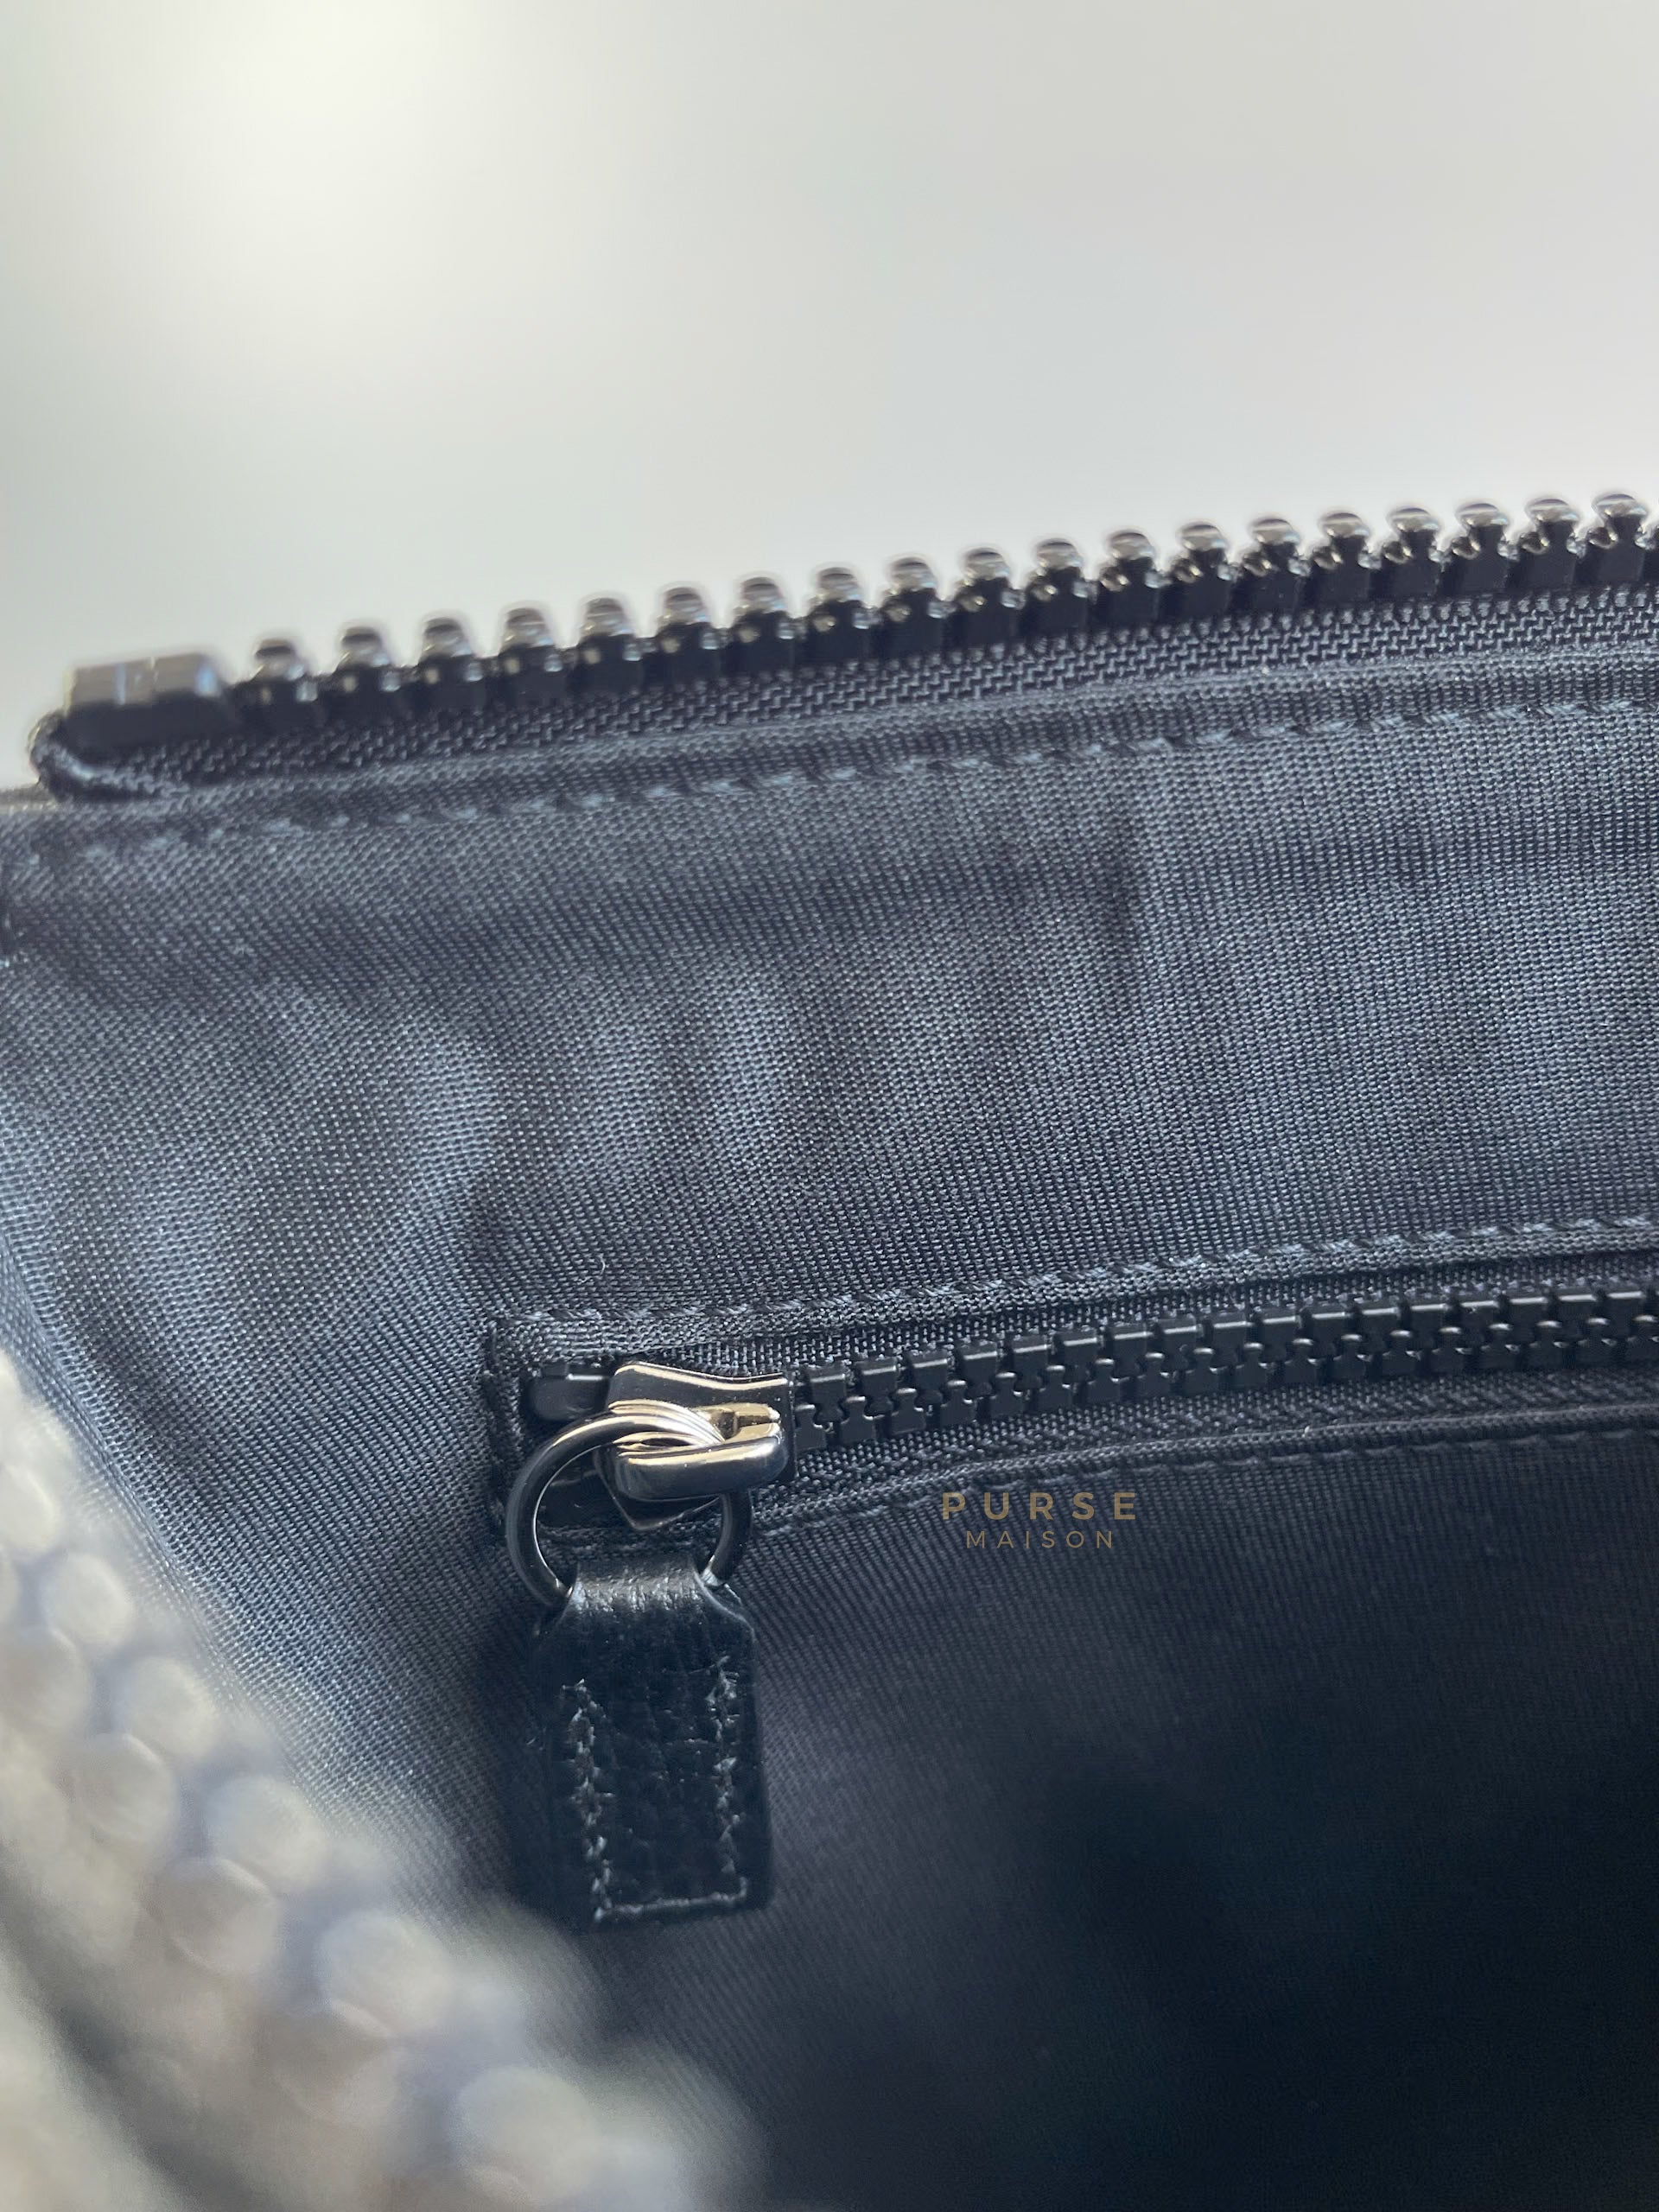 GG Supreme Small Monogram Front Zip Messenger Bag | Purse Maison Luxury Bags Shop